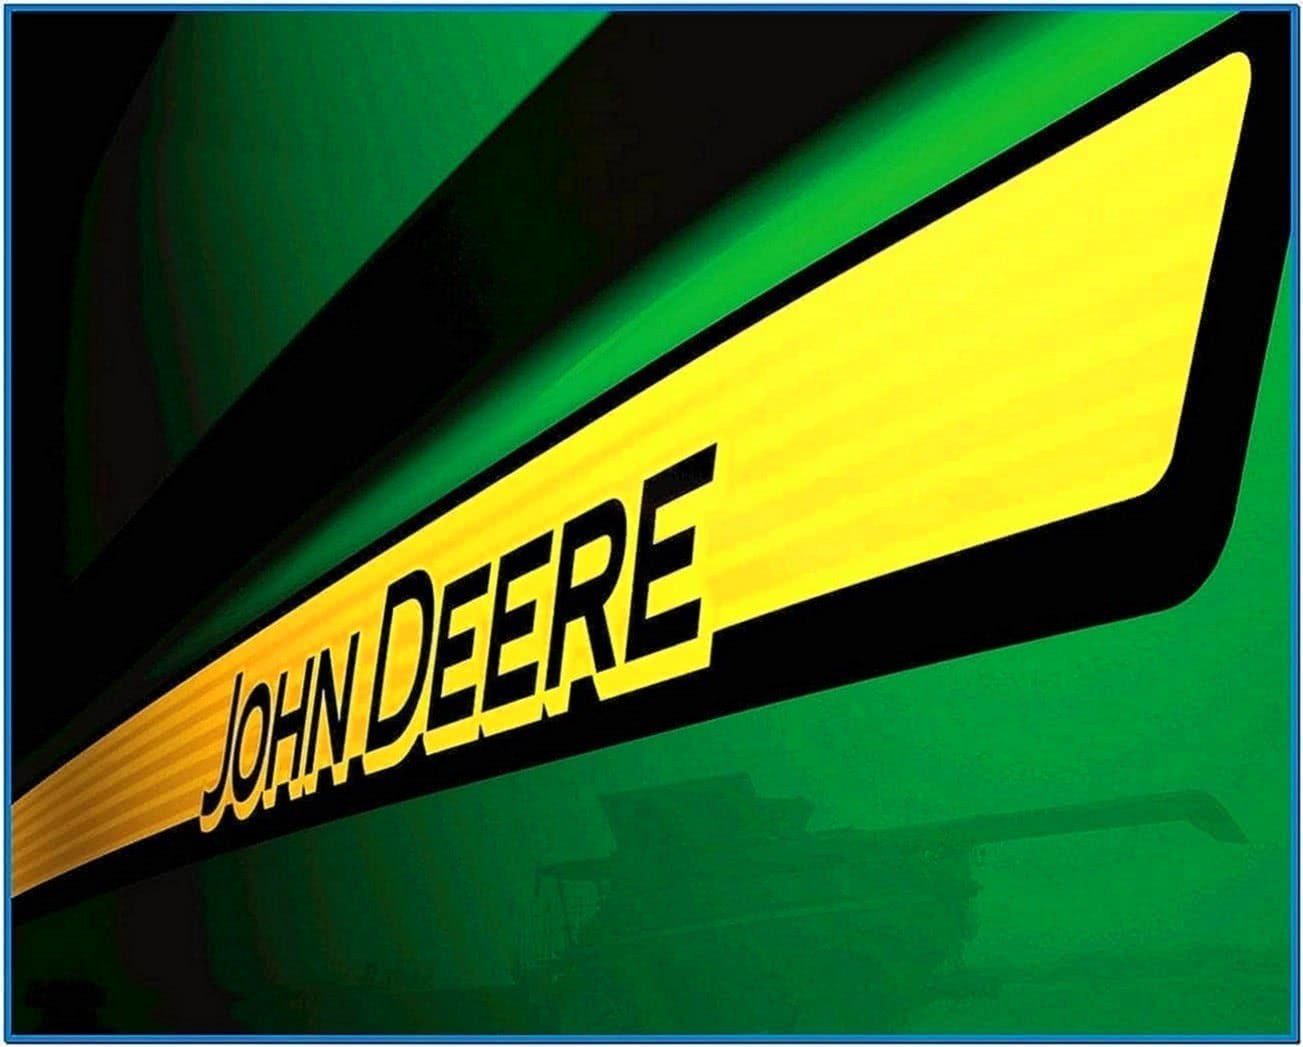 John Deere Logo Screensaver Download Screensavers biz